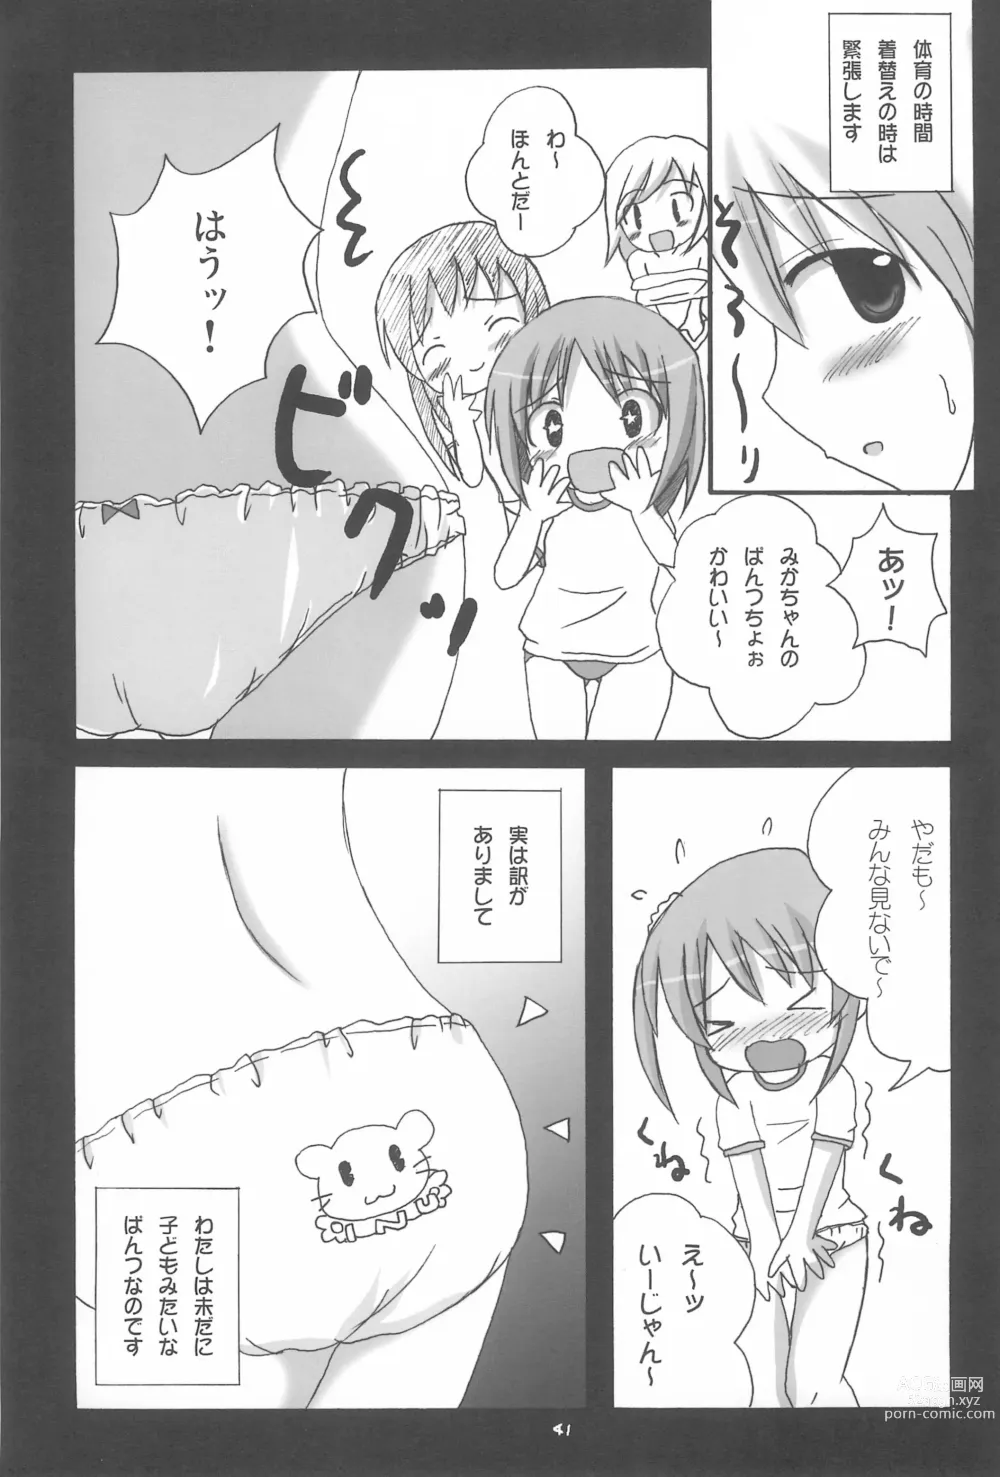 Page 41 of doujinshi Twintail na Onnanoko Hon 1.2.3.Tsumechaimashita.